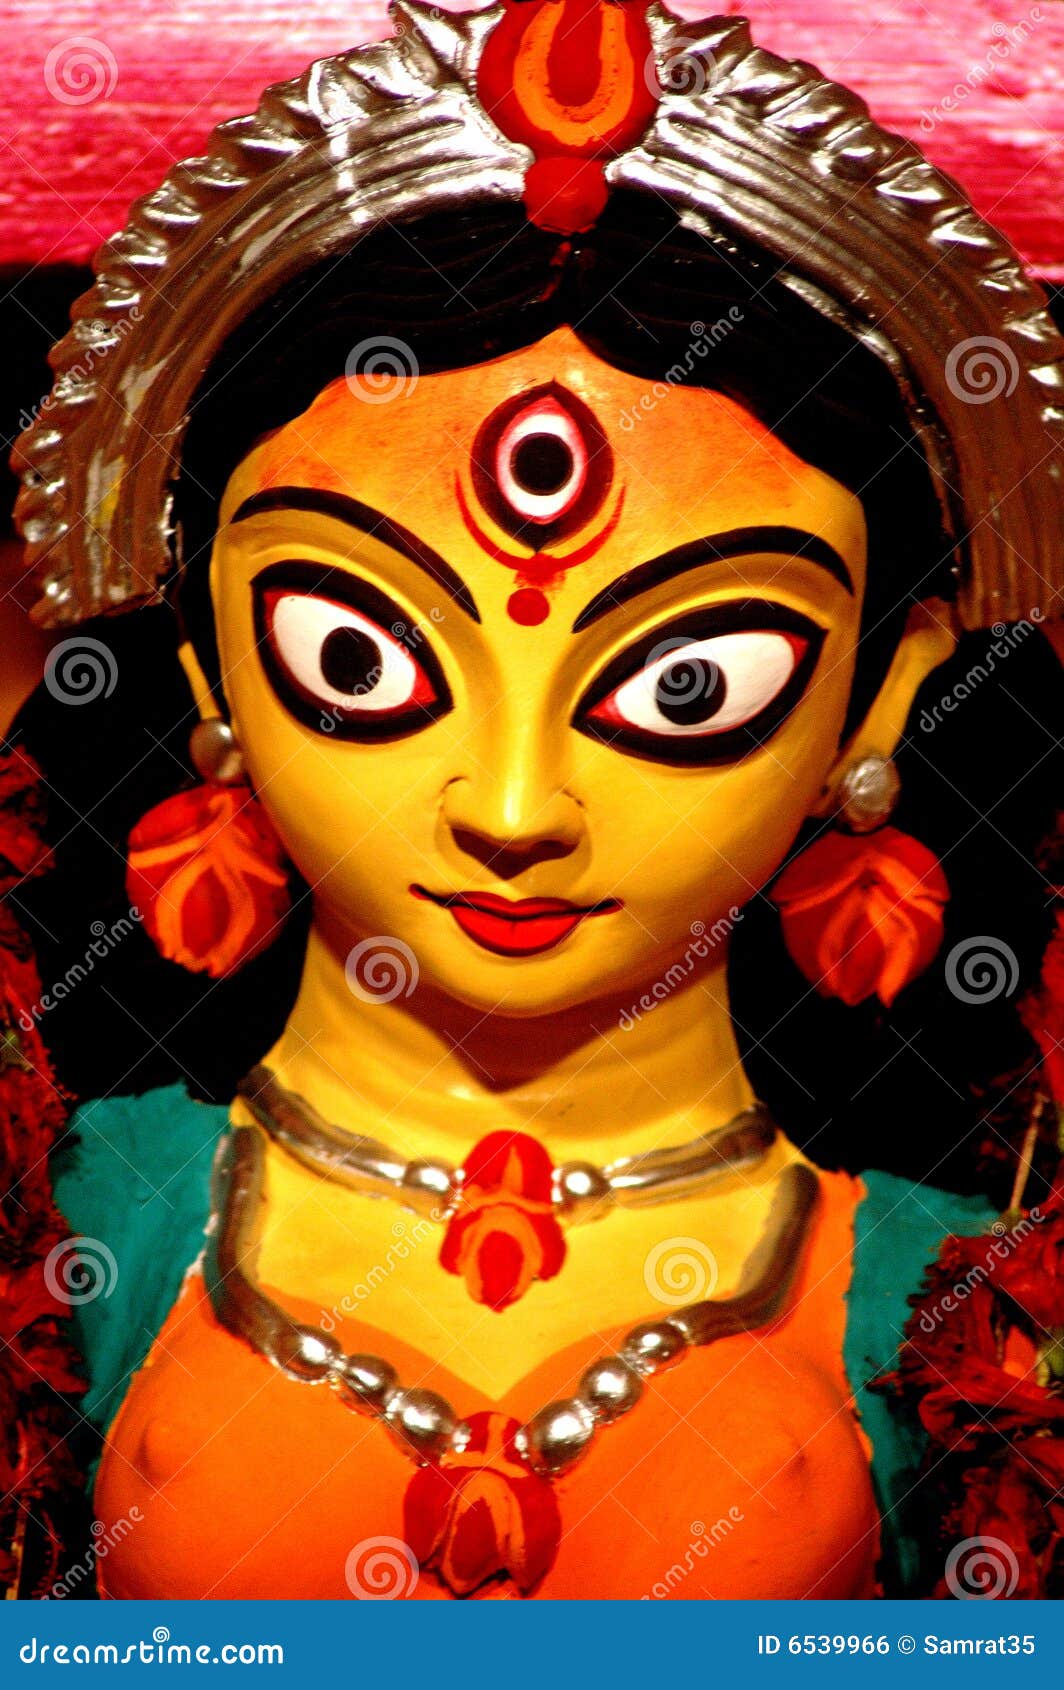 a close up of durga idol.